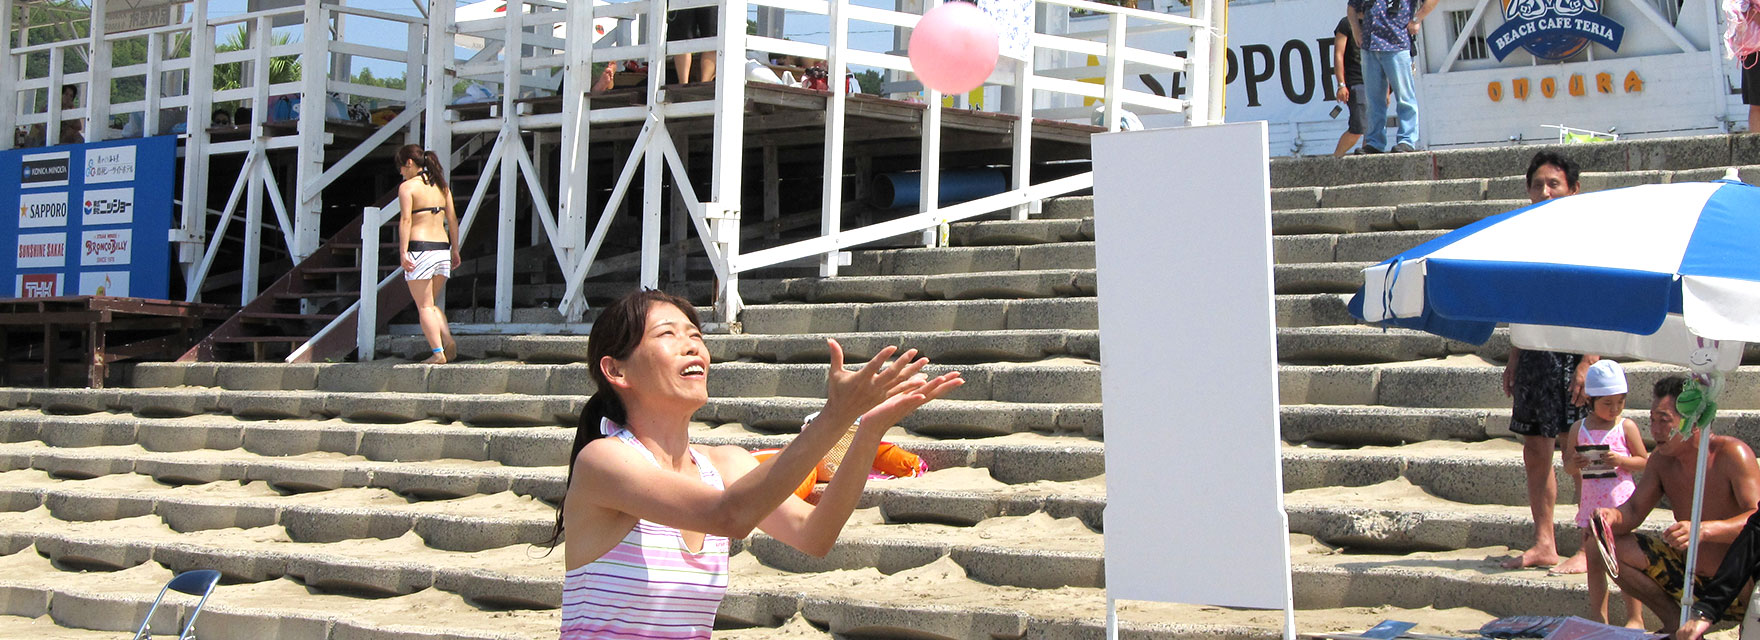 水風船爆弾キャッチゲーム 美浜海遊祭19 東海テレビ